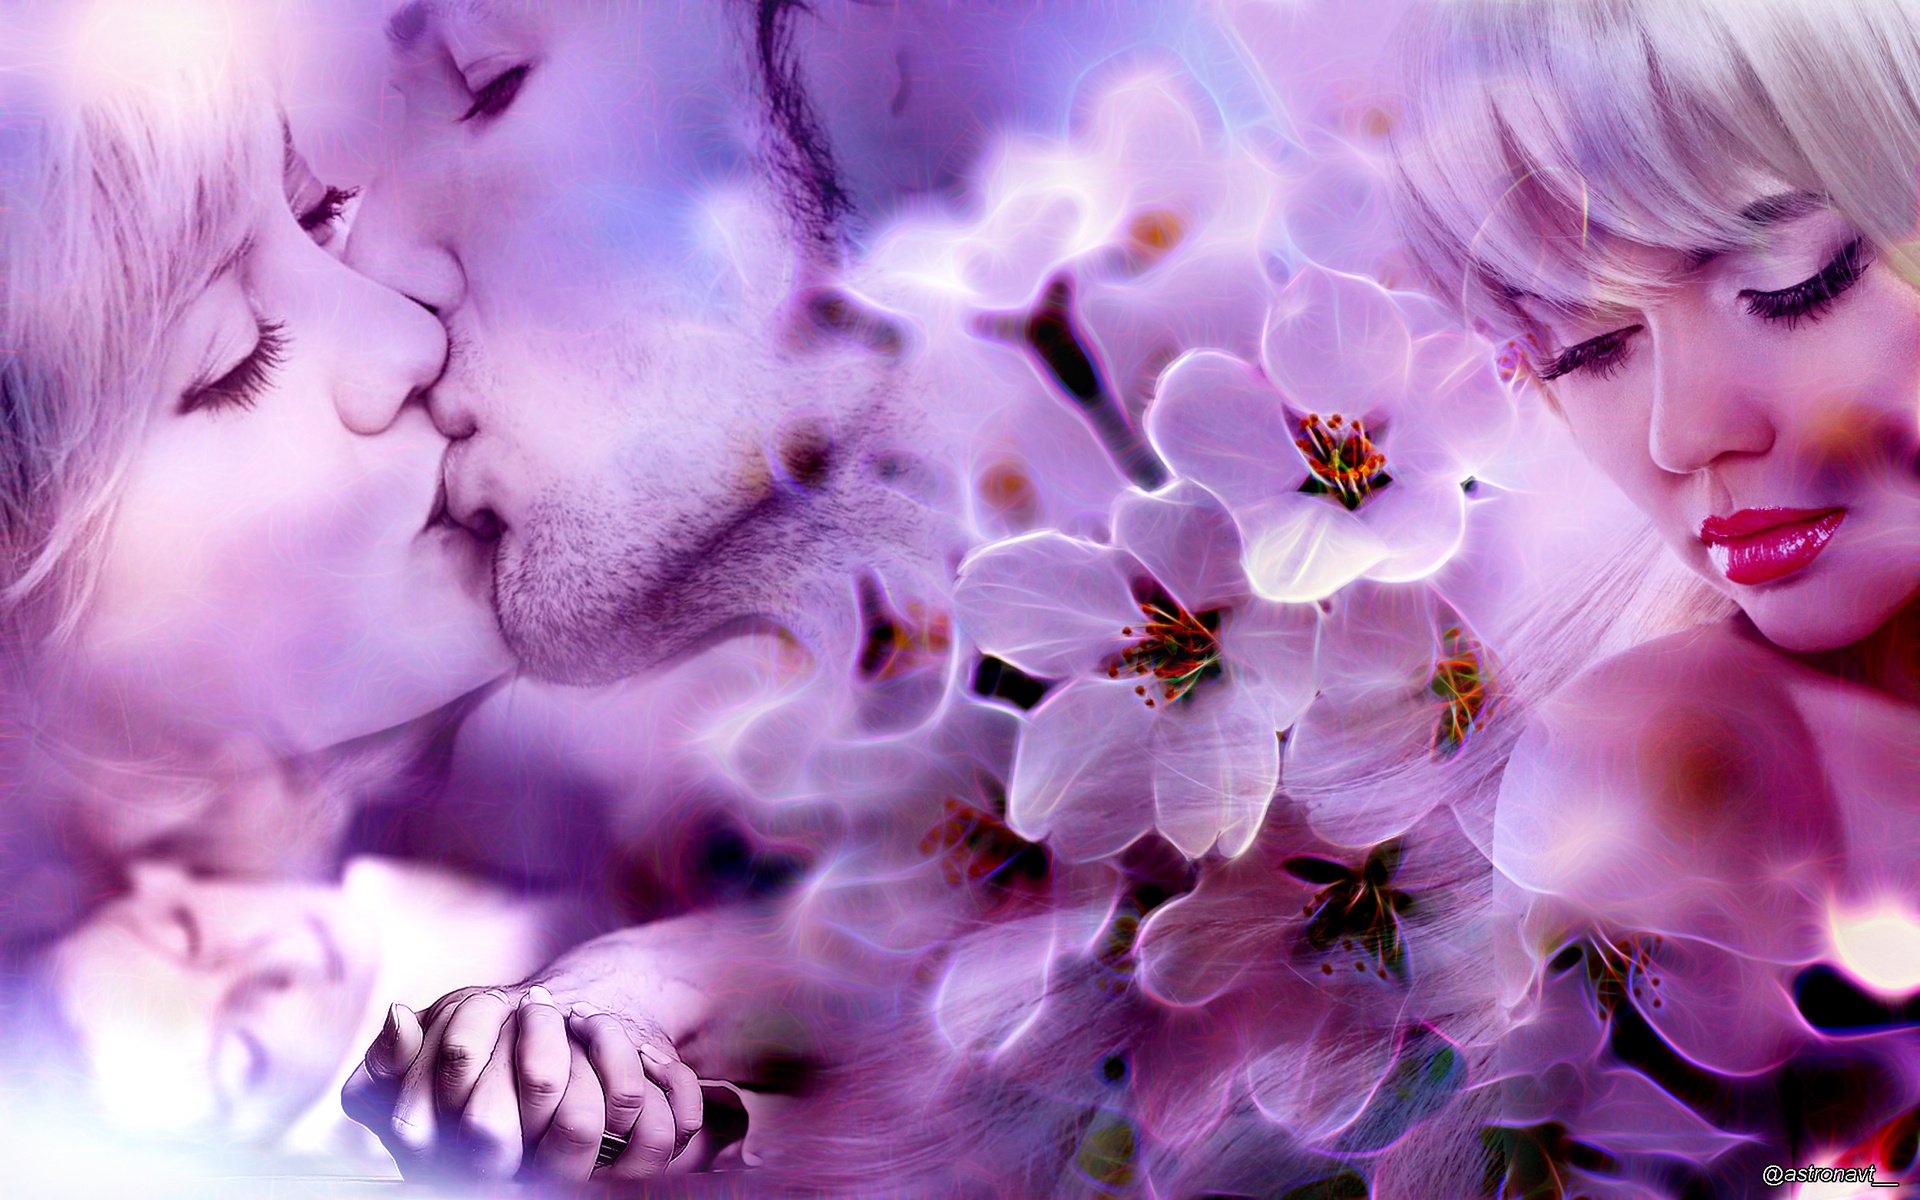 Нежность лучшее. Любовь и нежность. Весна нежность любовь. Цветы любовь нежность. Нежный поцелуй.